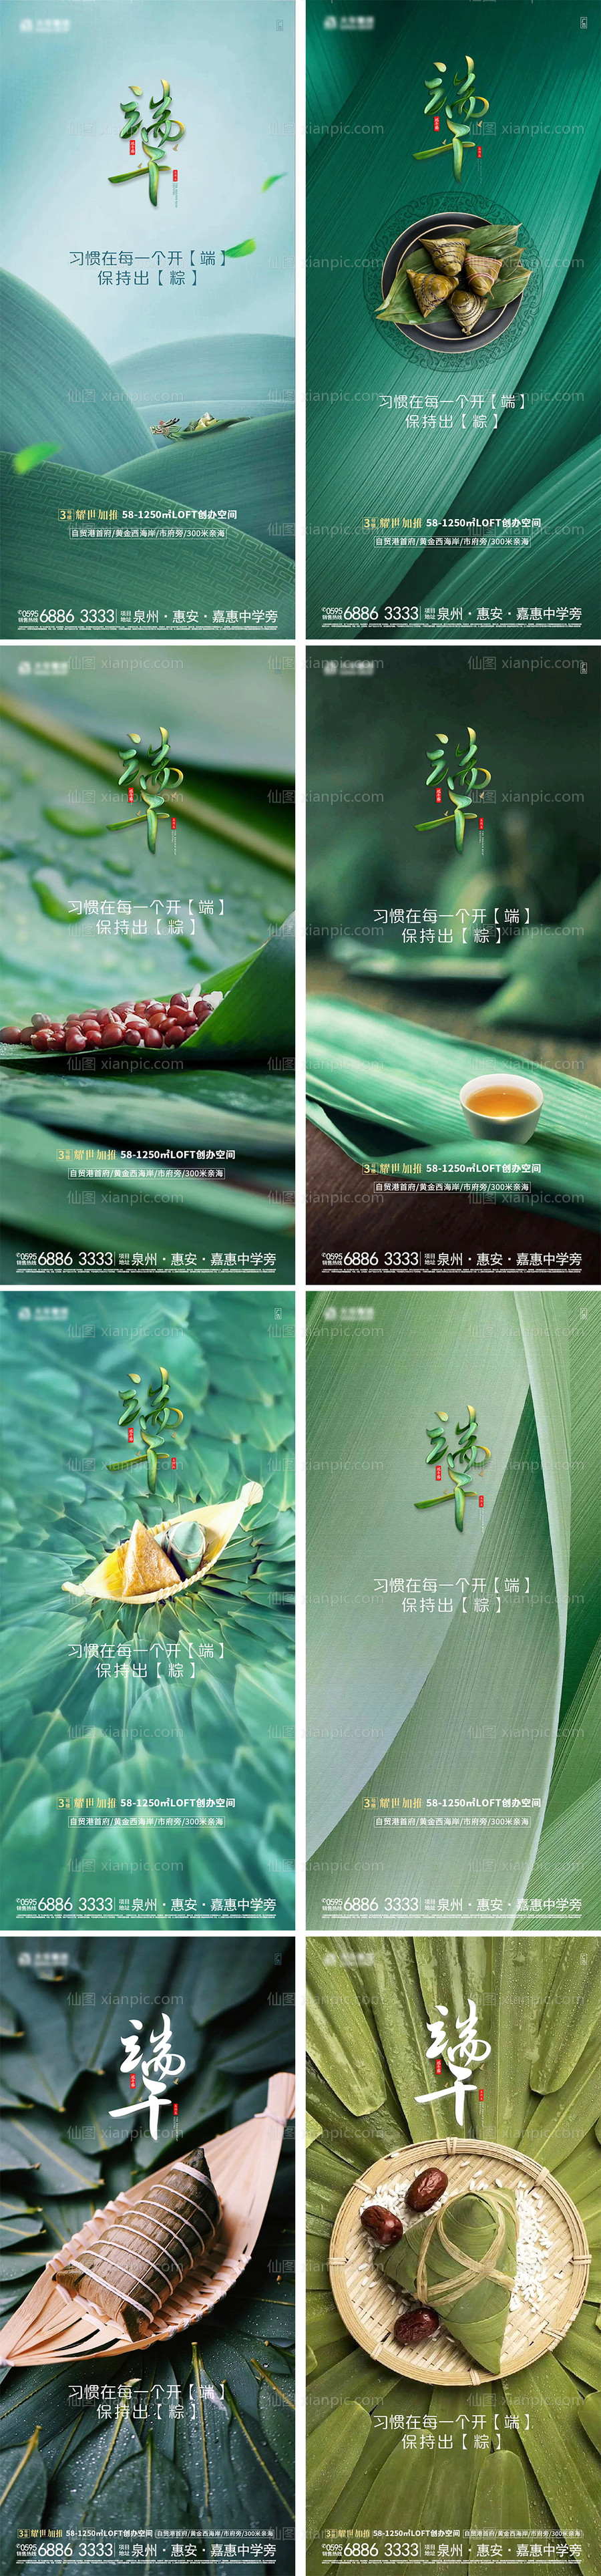 素材乐-传统节日端午节粽子系列宣传稿